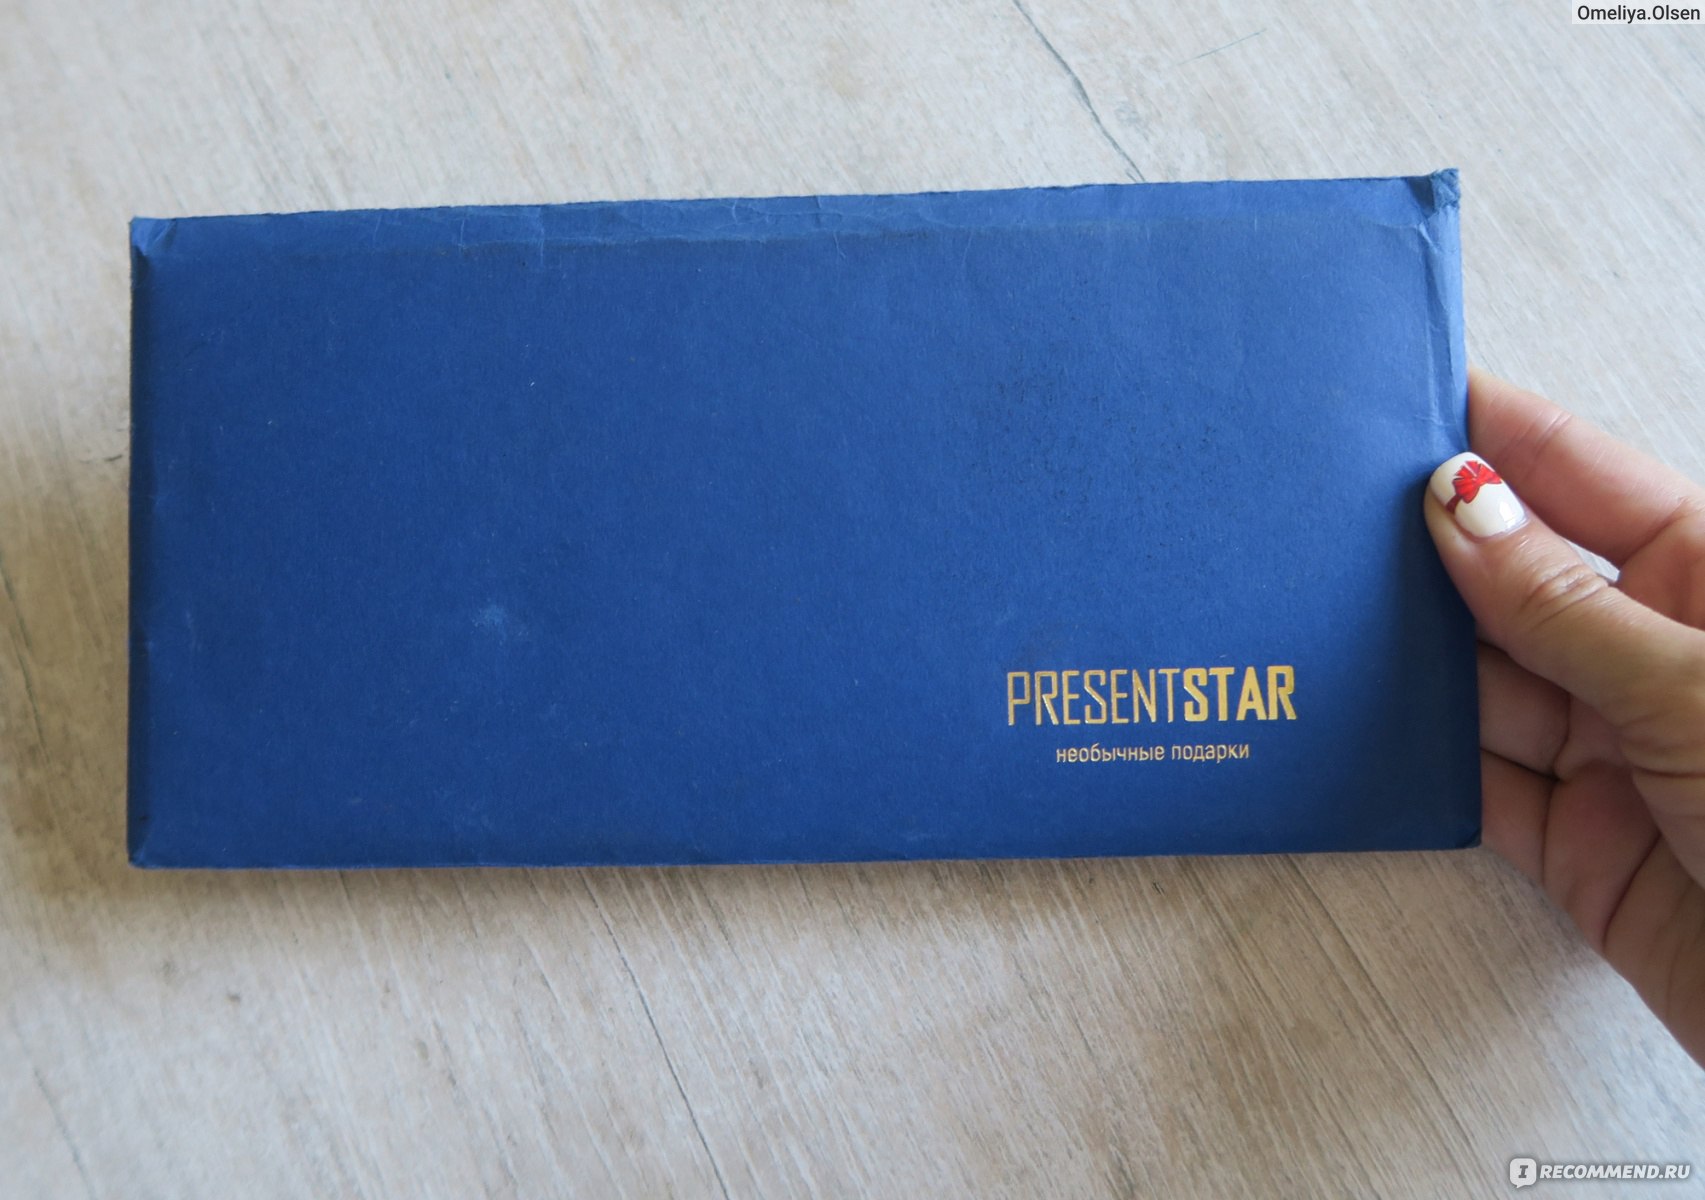 Presentstar | подарочные сертификаты в Москве